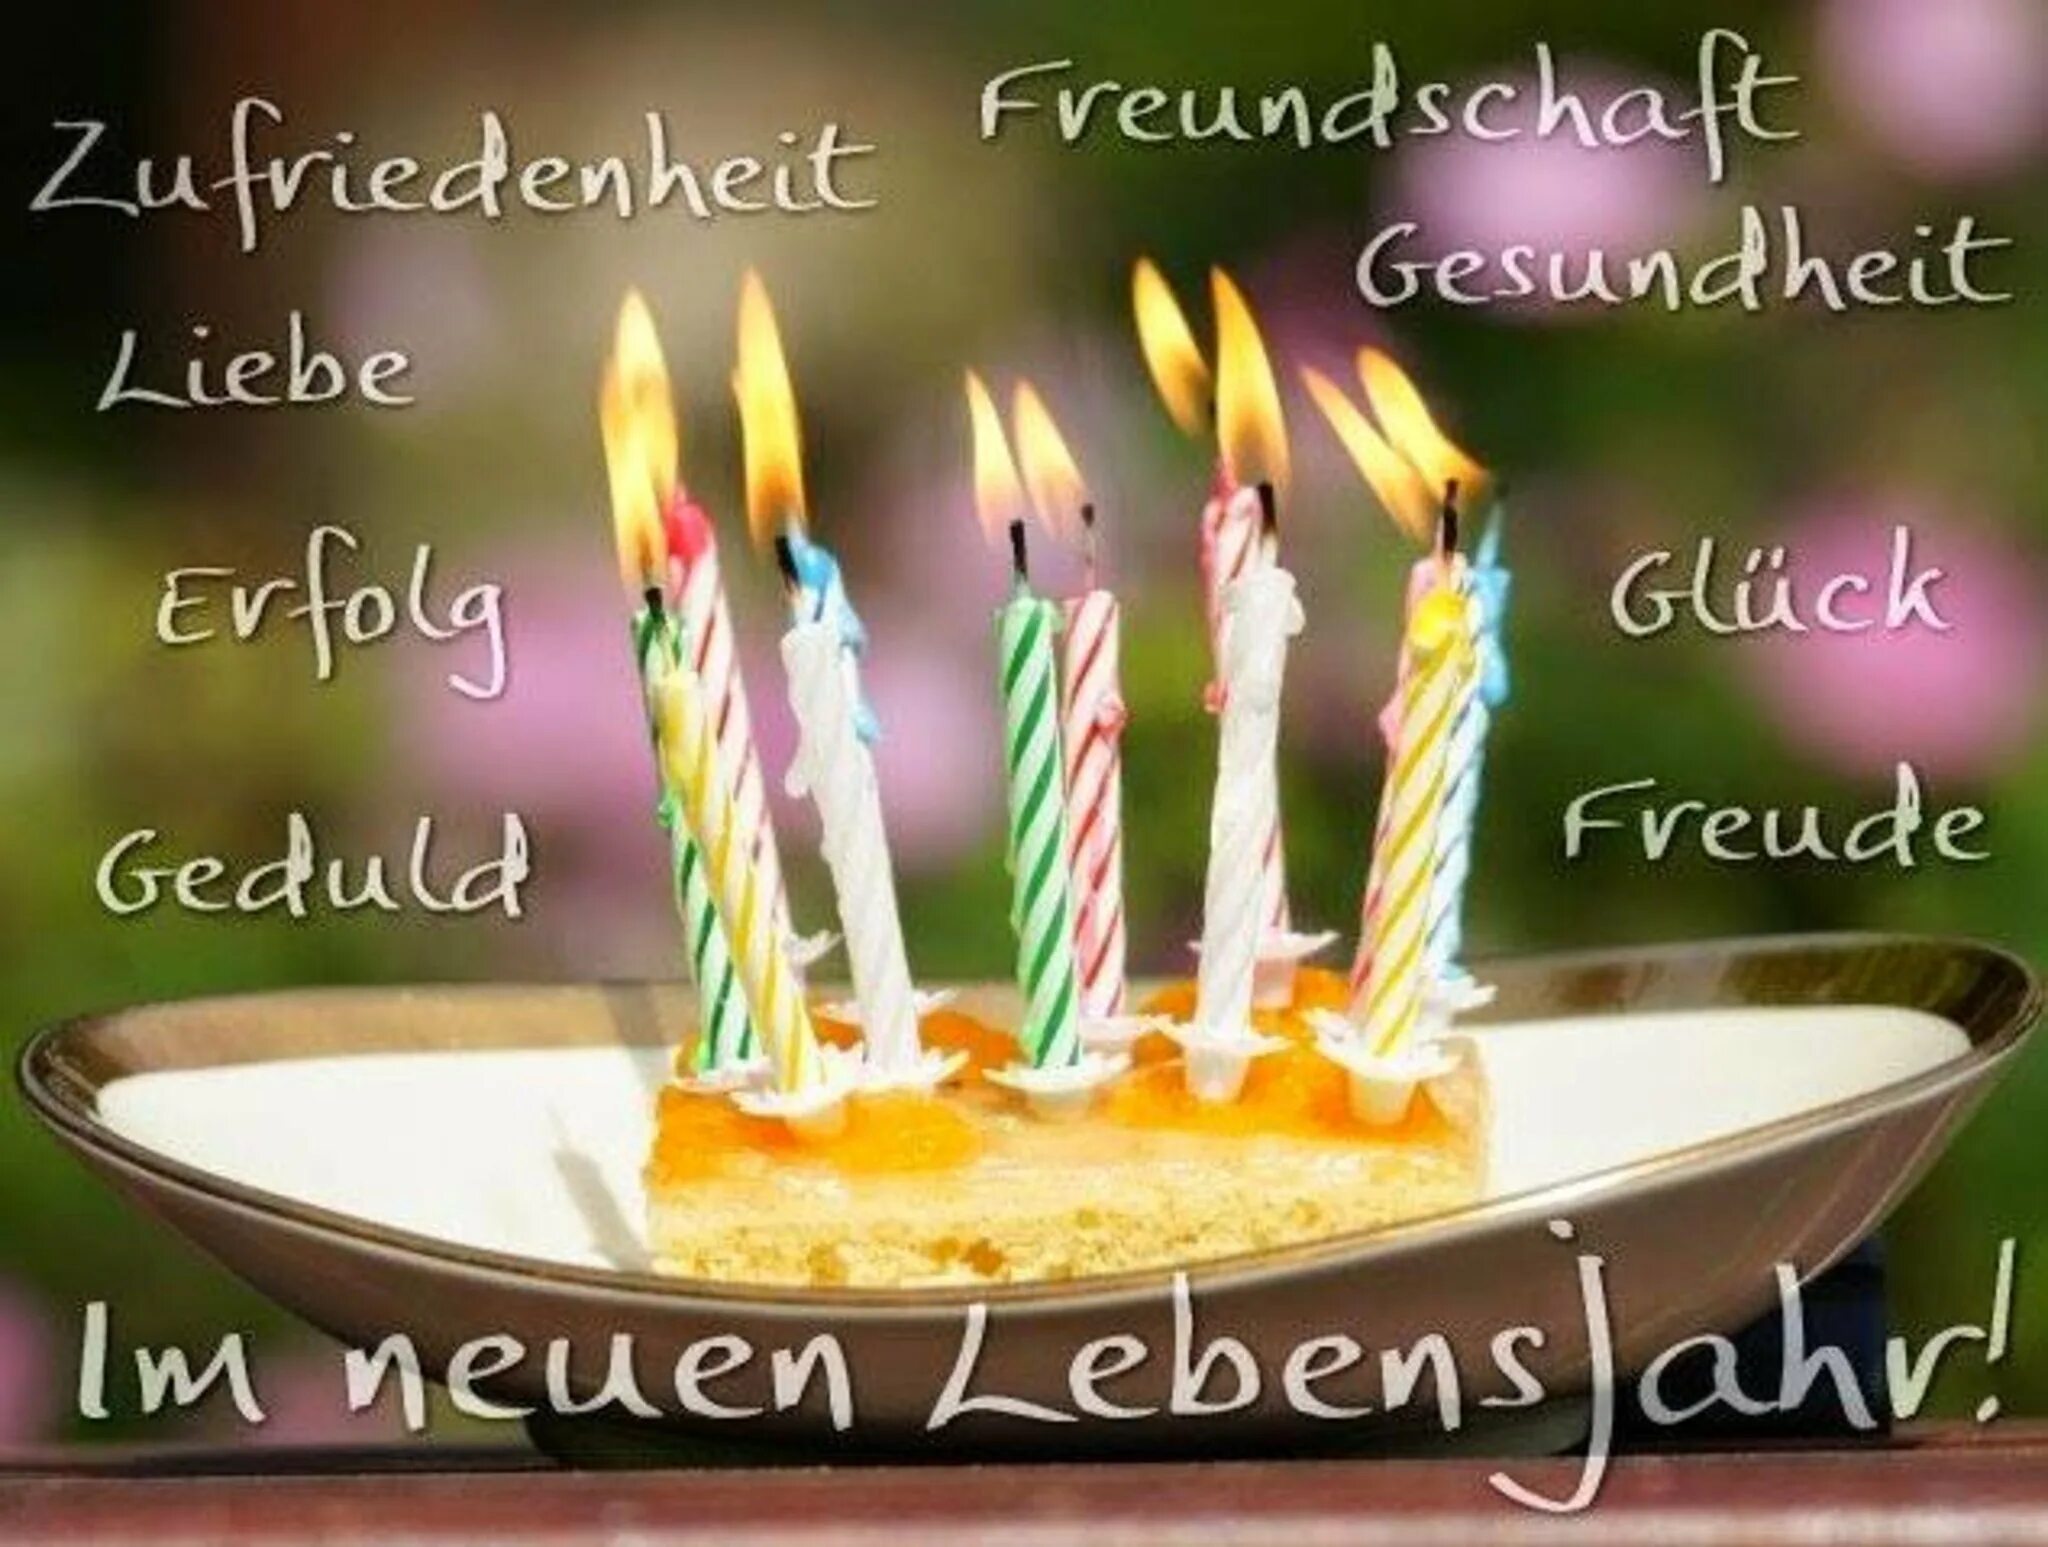 С днем рождения на немецком языке женщине. Поздравление с днем рождения на немецком. Открытка с днём рождения на немецком языке. Поздравление с др на немецком языке. Поздравления с днём рождения мужчине на немецком языке.